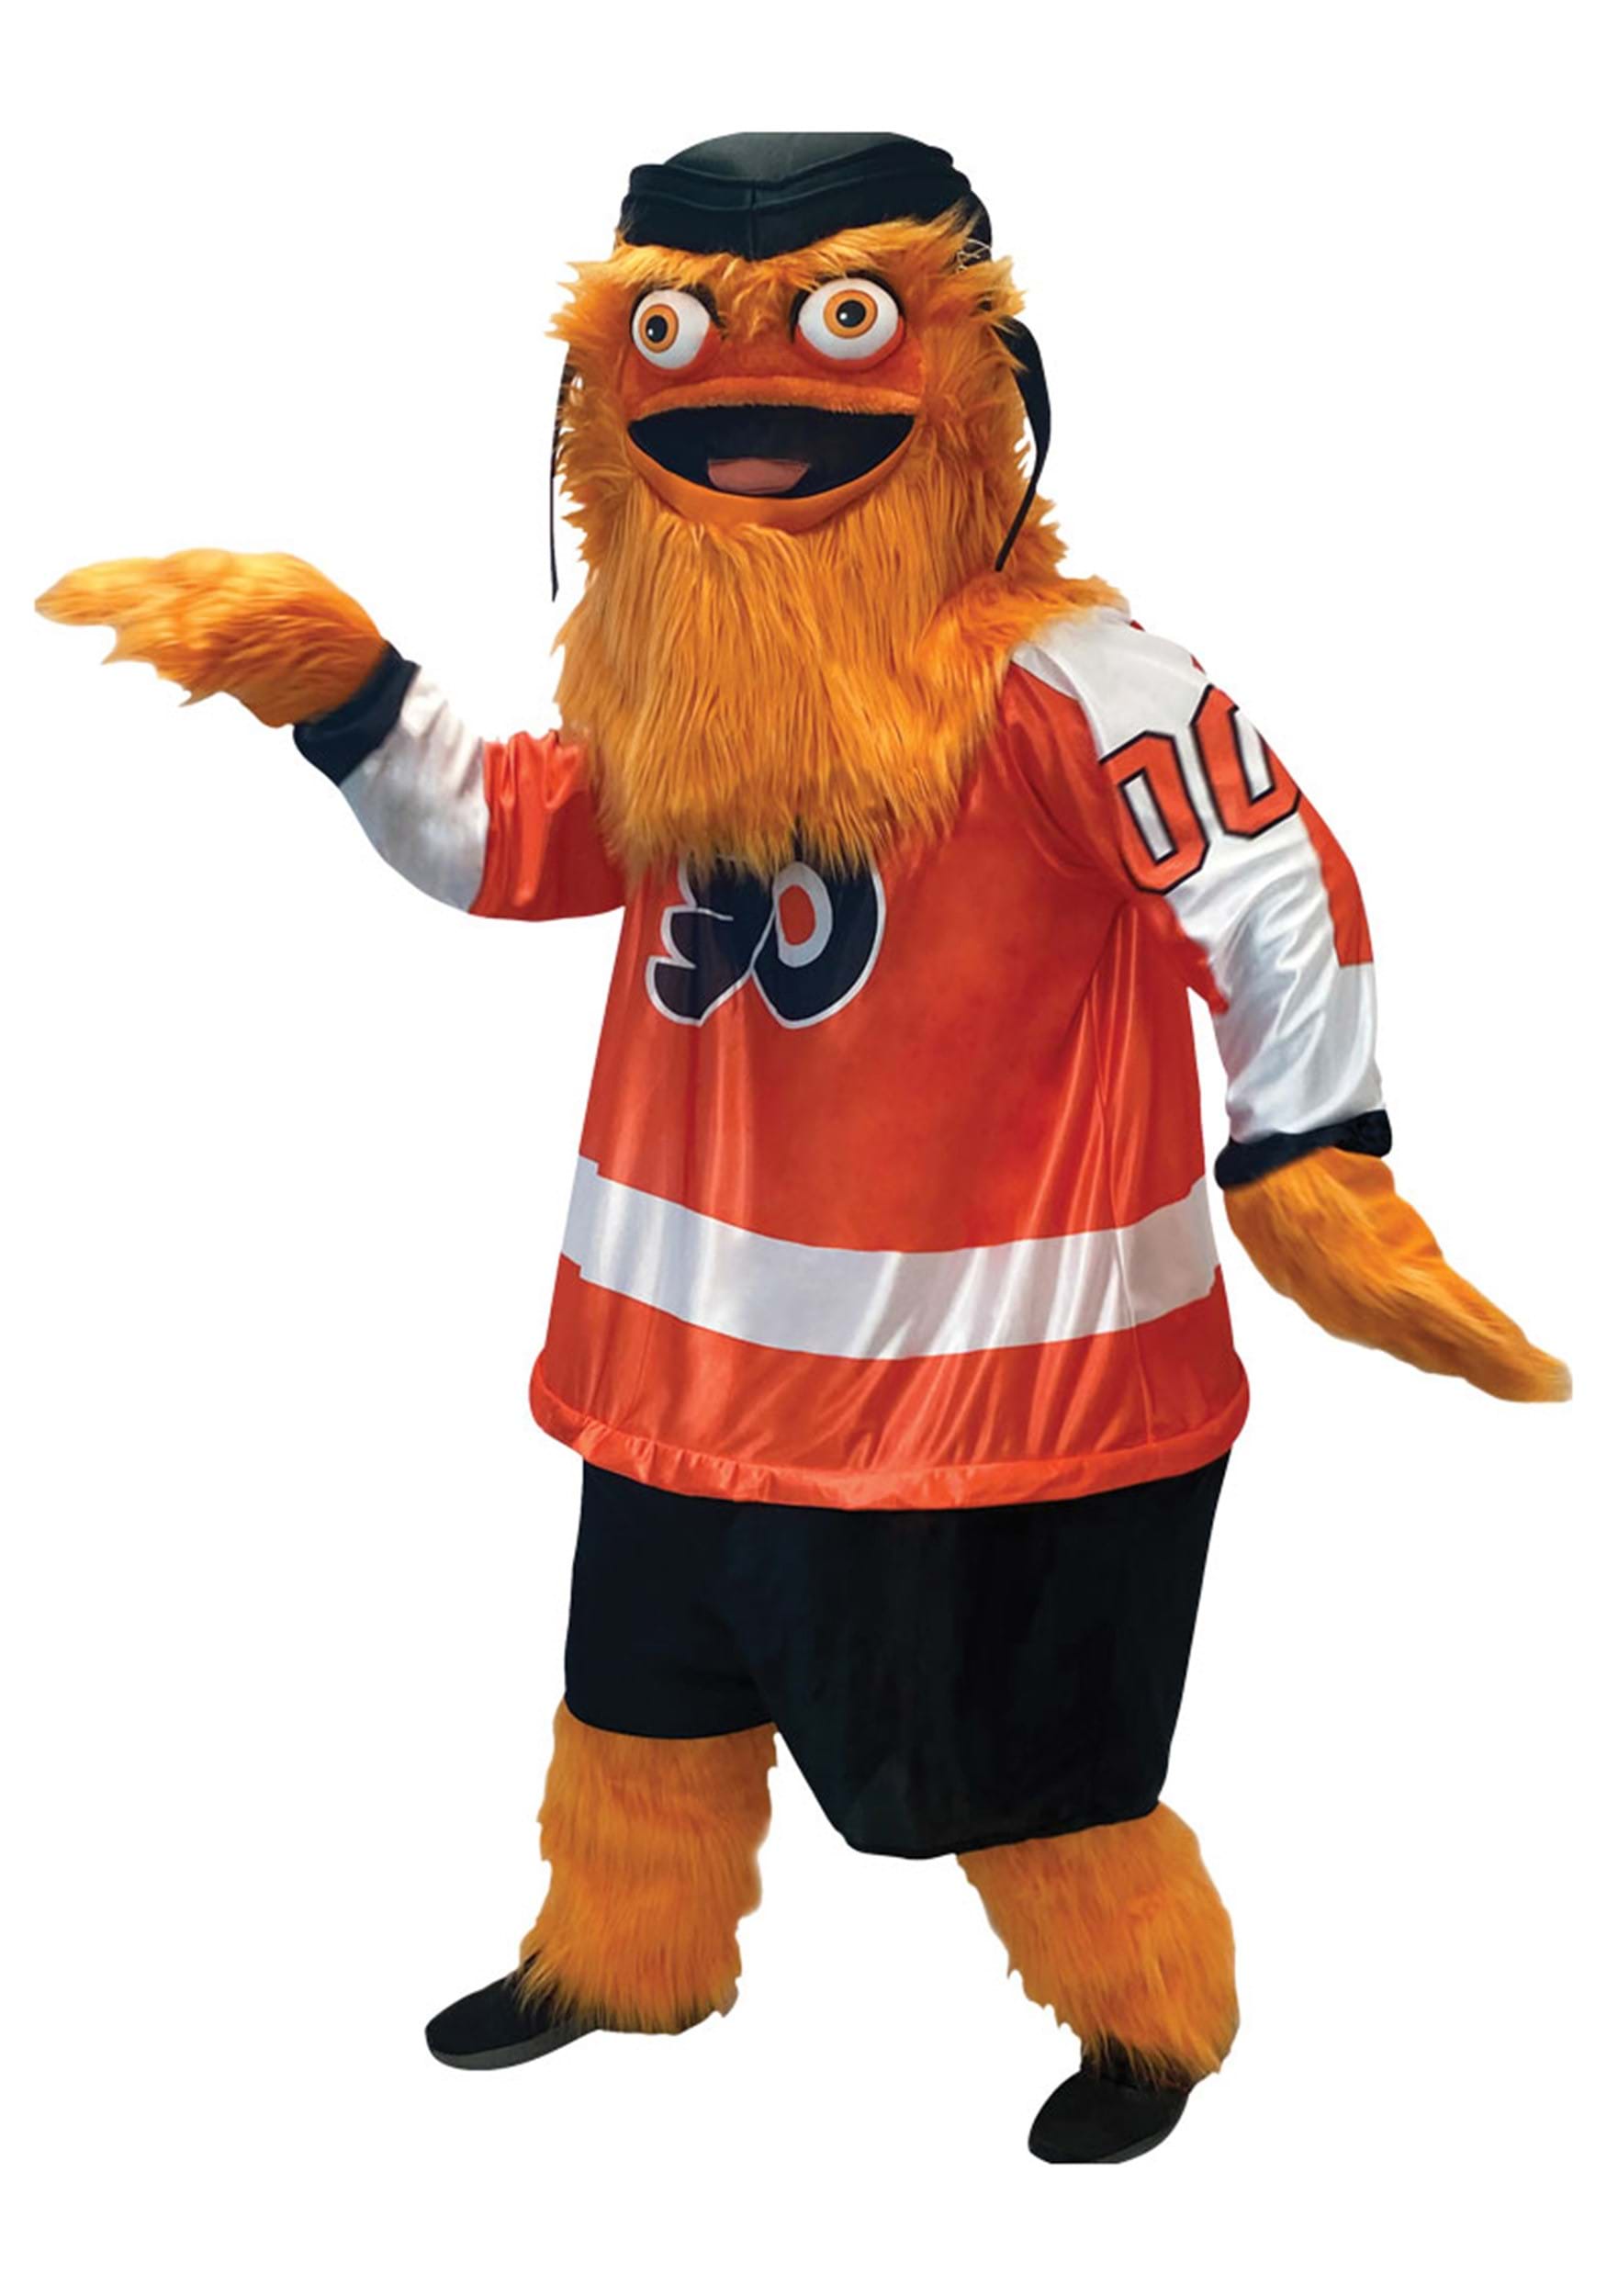 Adult NHL Gritty Mascot Fancy Dress Costume , NHL Fancy Dress Costumes